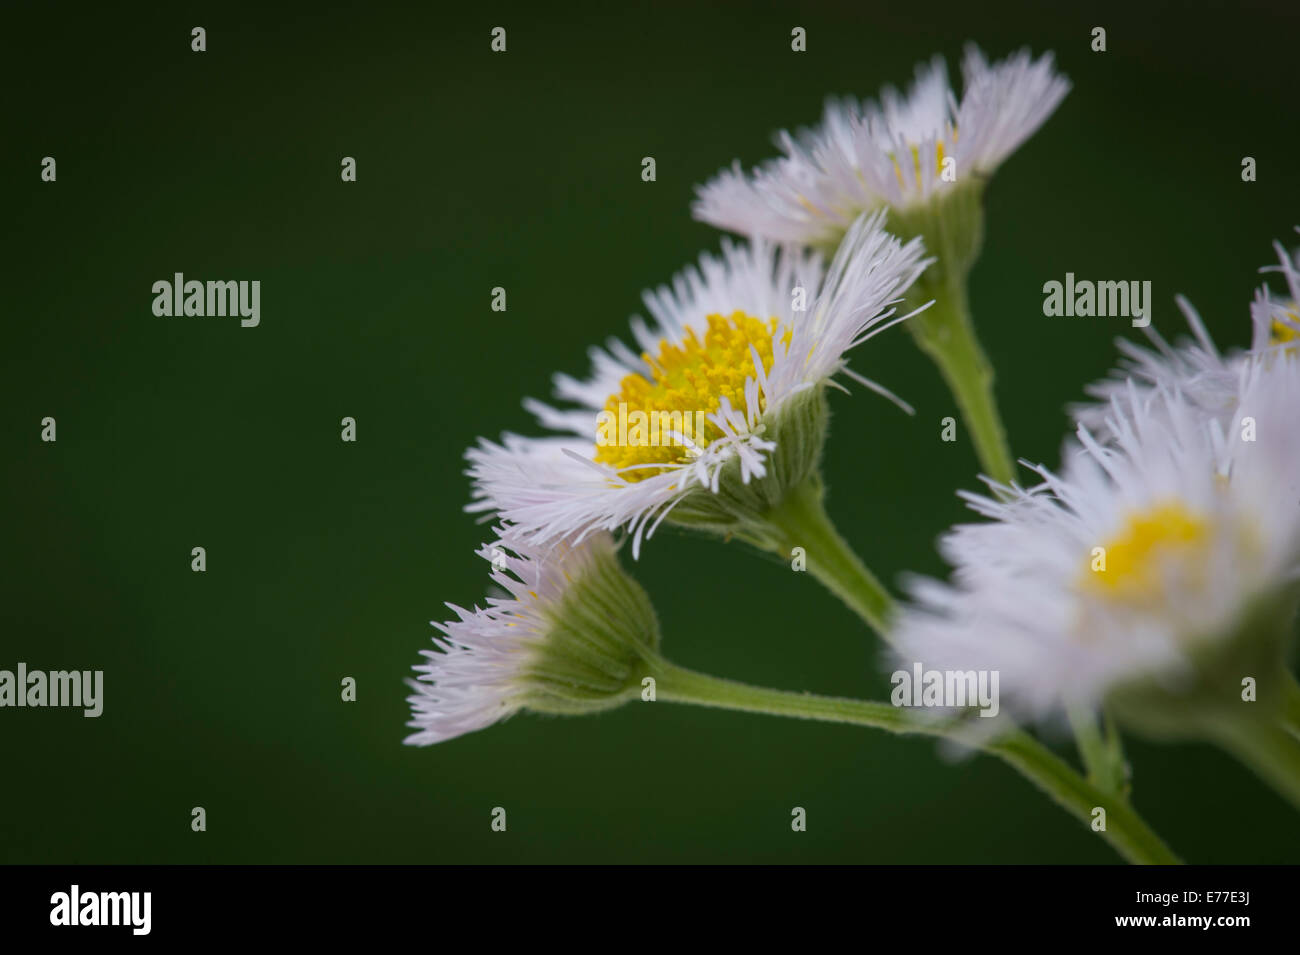 Aster buissonnant, de minuscules fleurs blanches Banque D'Images